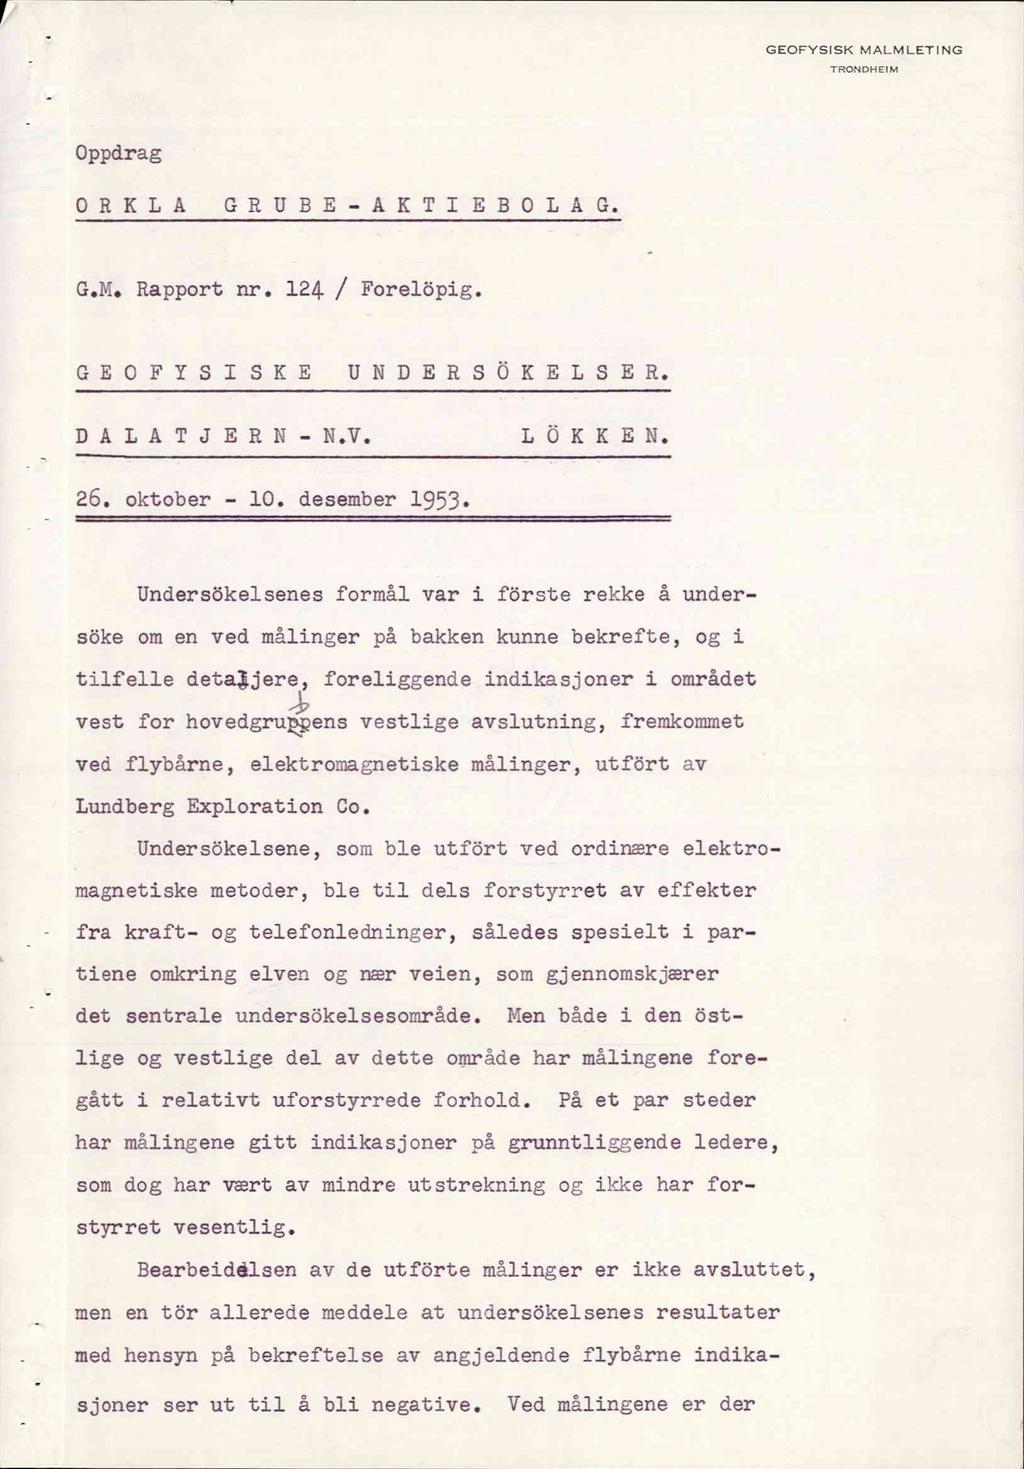 GEOFYSISK MALMLETI NG TRONDHEIM Oppdrag ORKLA GRUBE-AKTIEBOLA G. G.M. Rapport nr. 124 / Forelöpig. GEOFYSISKE UNDERSOKELSE R. DALATJERN- N.V. L OKKE N. 26. oktober - 10. desember 1953.